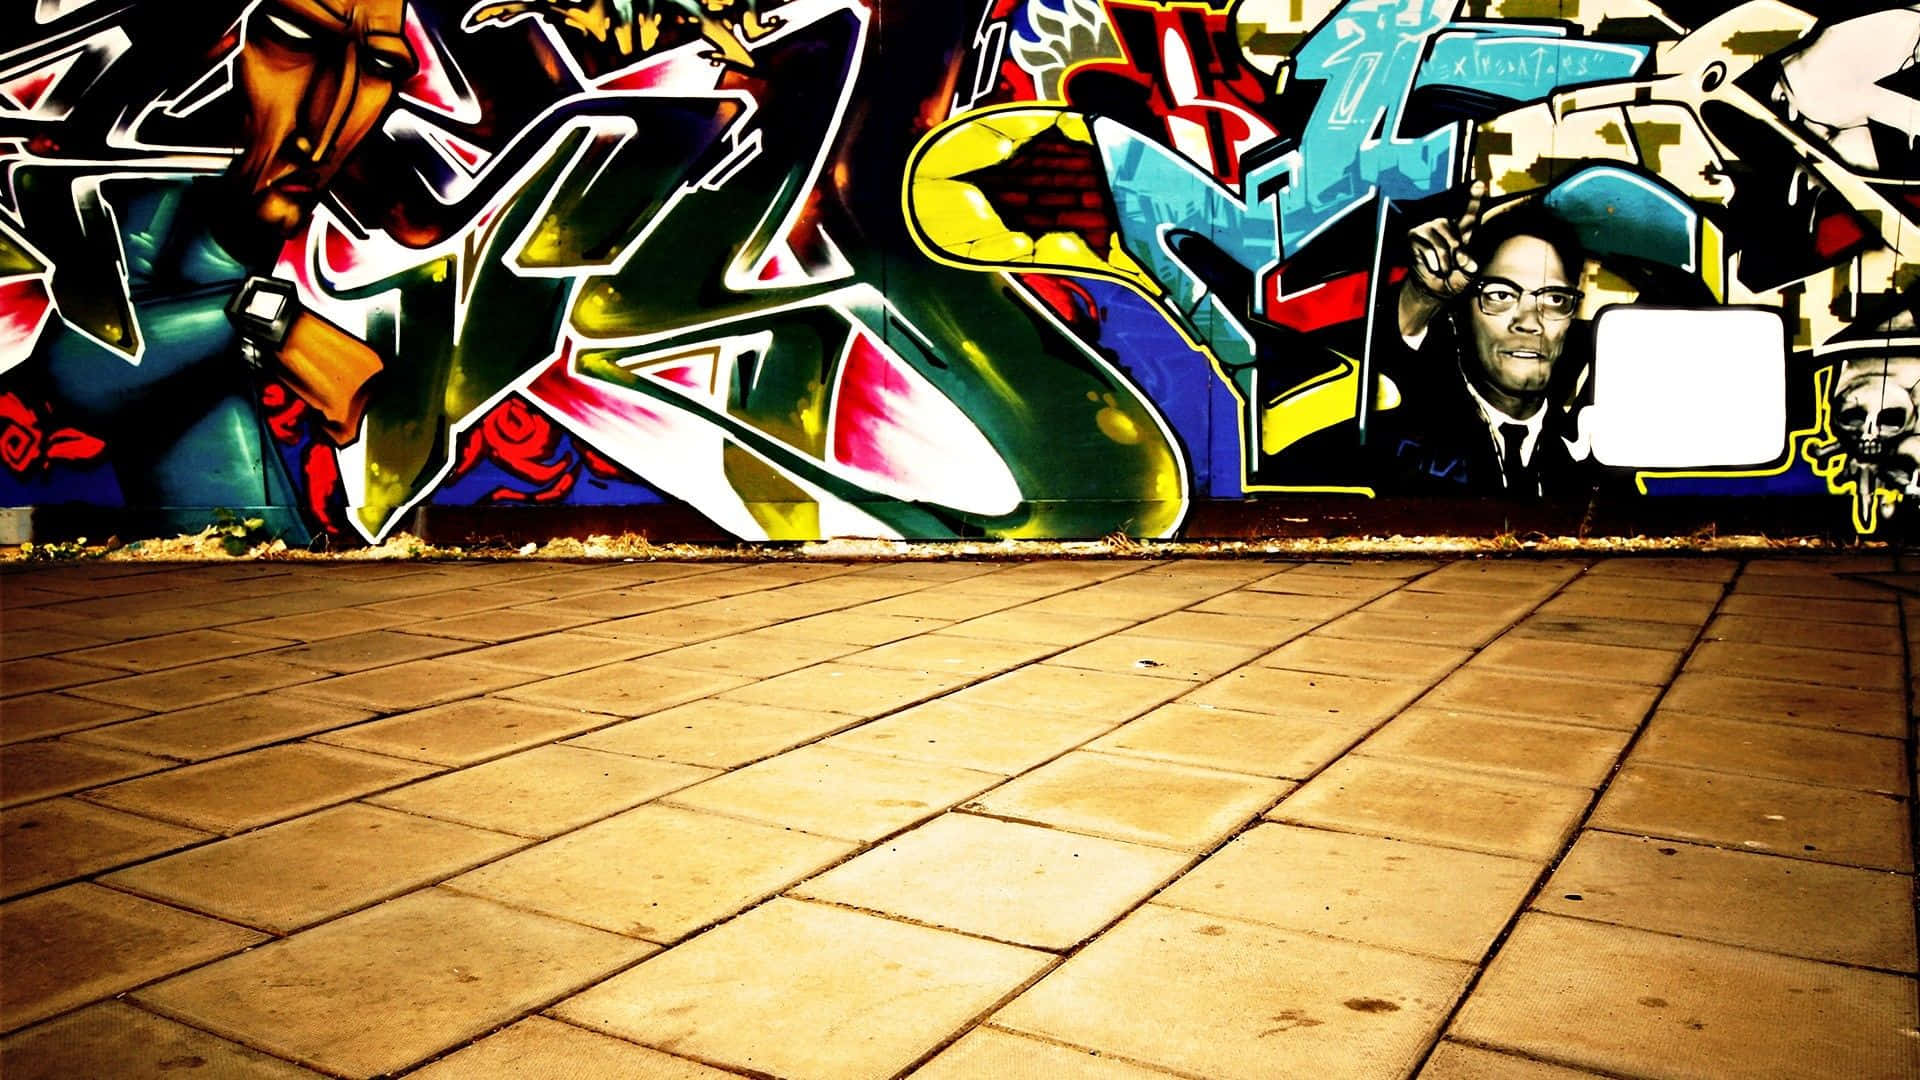 Colorful Patterns Of Graffiti Wall Art Background